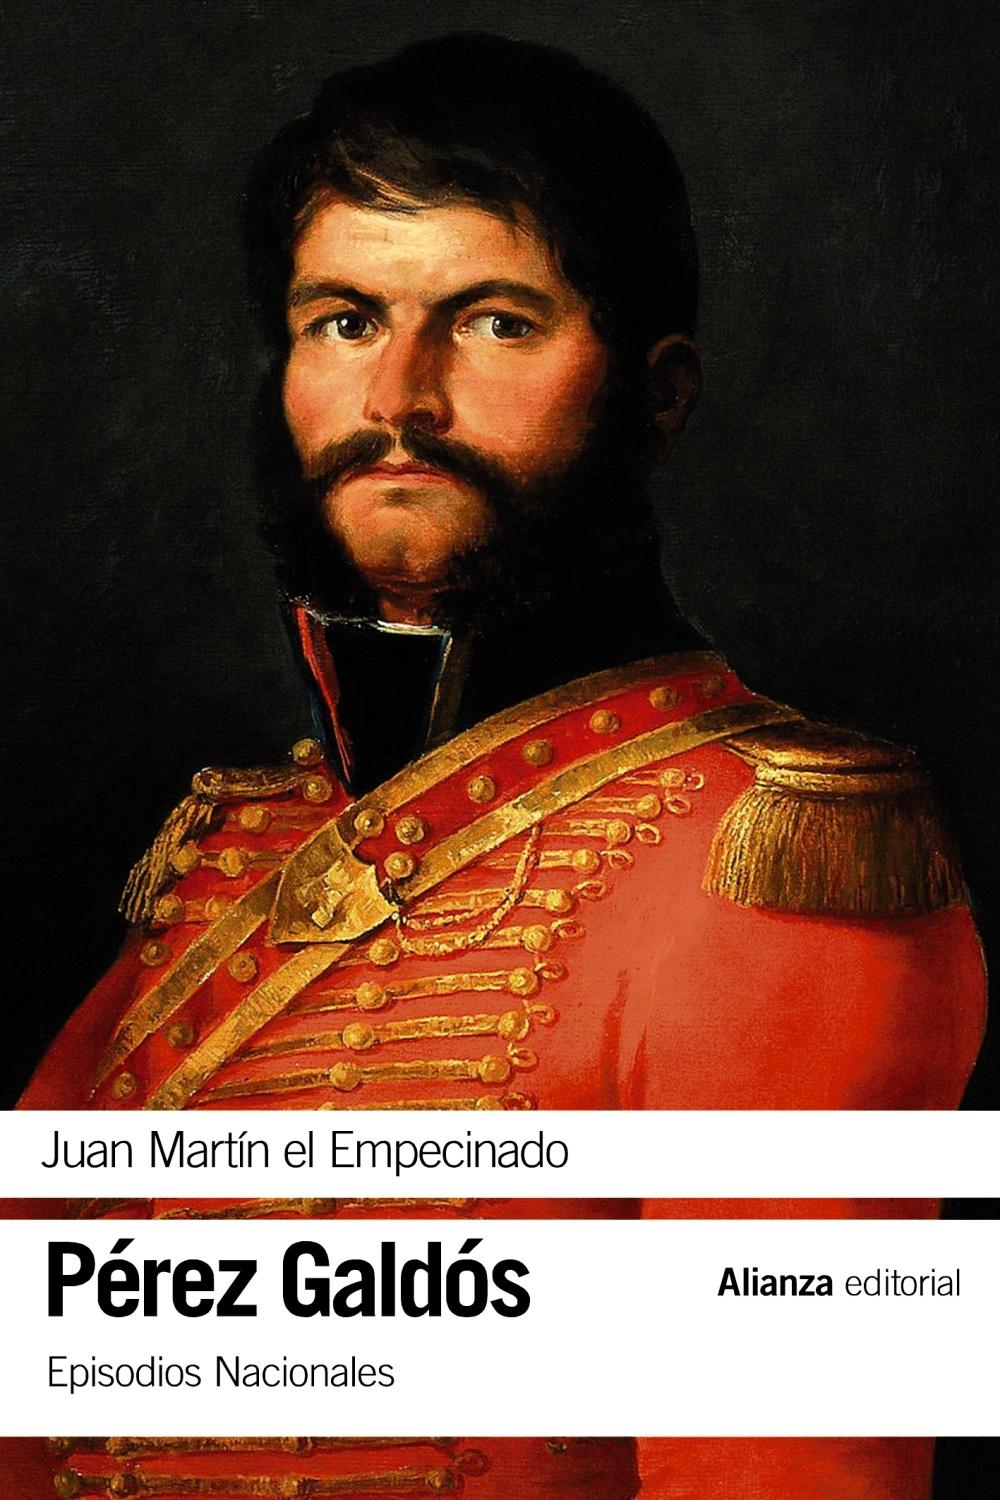 Juan Martín el Empecinado "Episodios Nacionales, 9 / Primera serie"